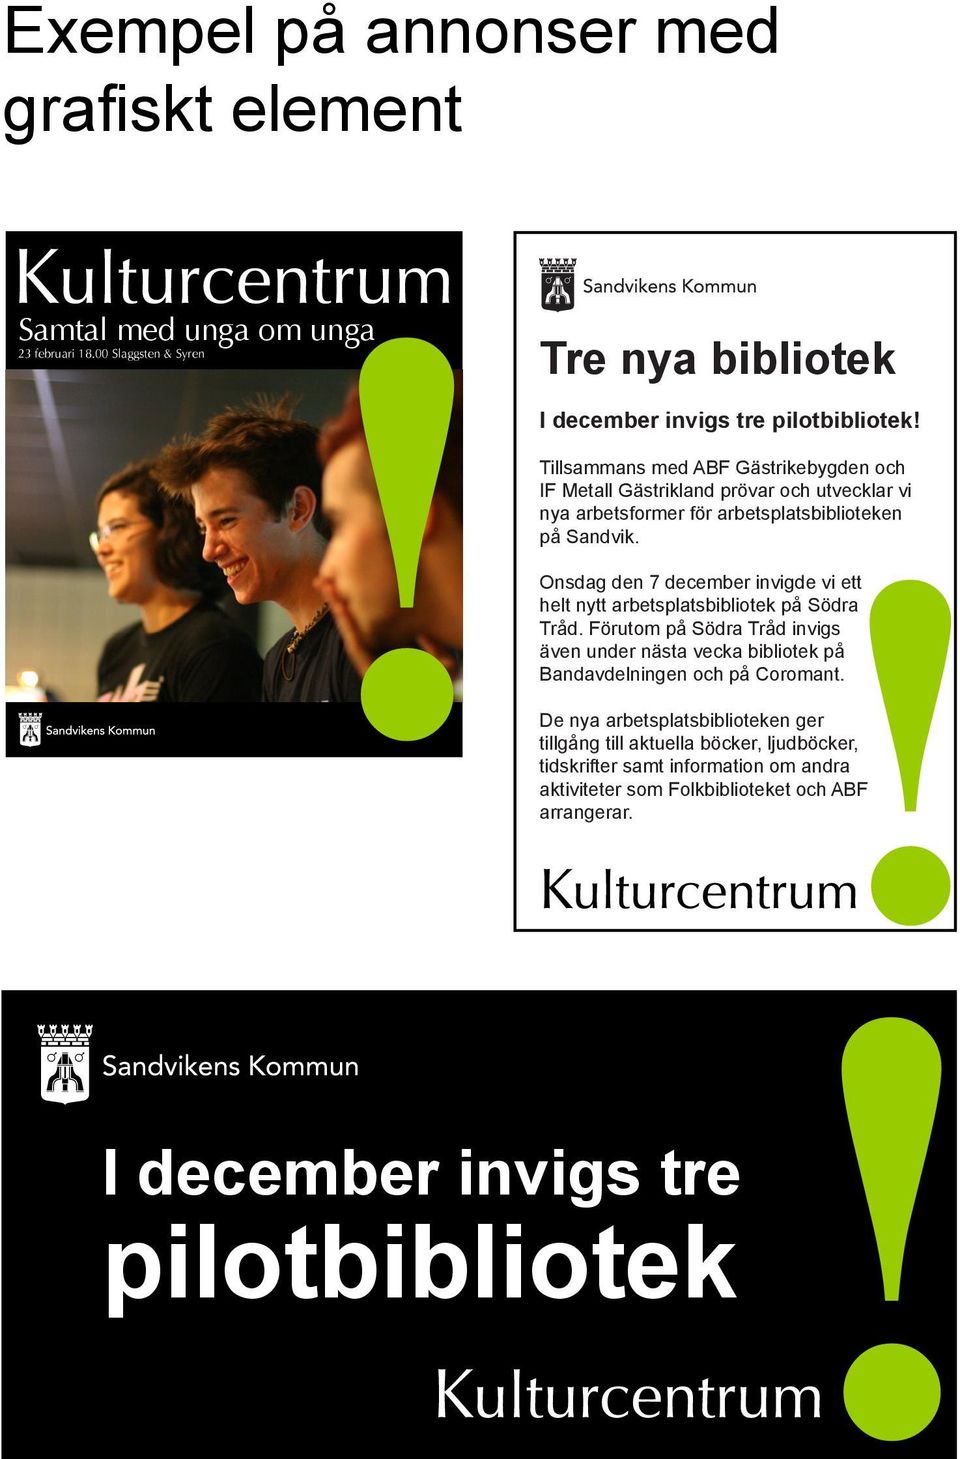 Onsdag den 7 december invigde vi ett helt nytt arbetsplatsbibliotek på Södra Tråd.